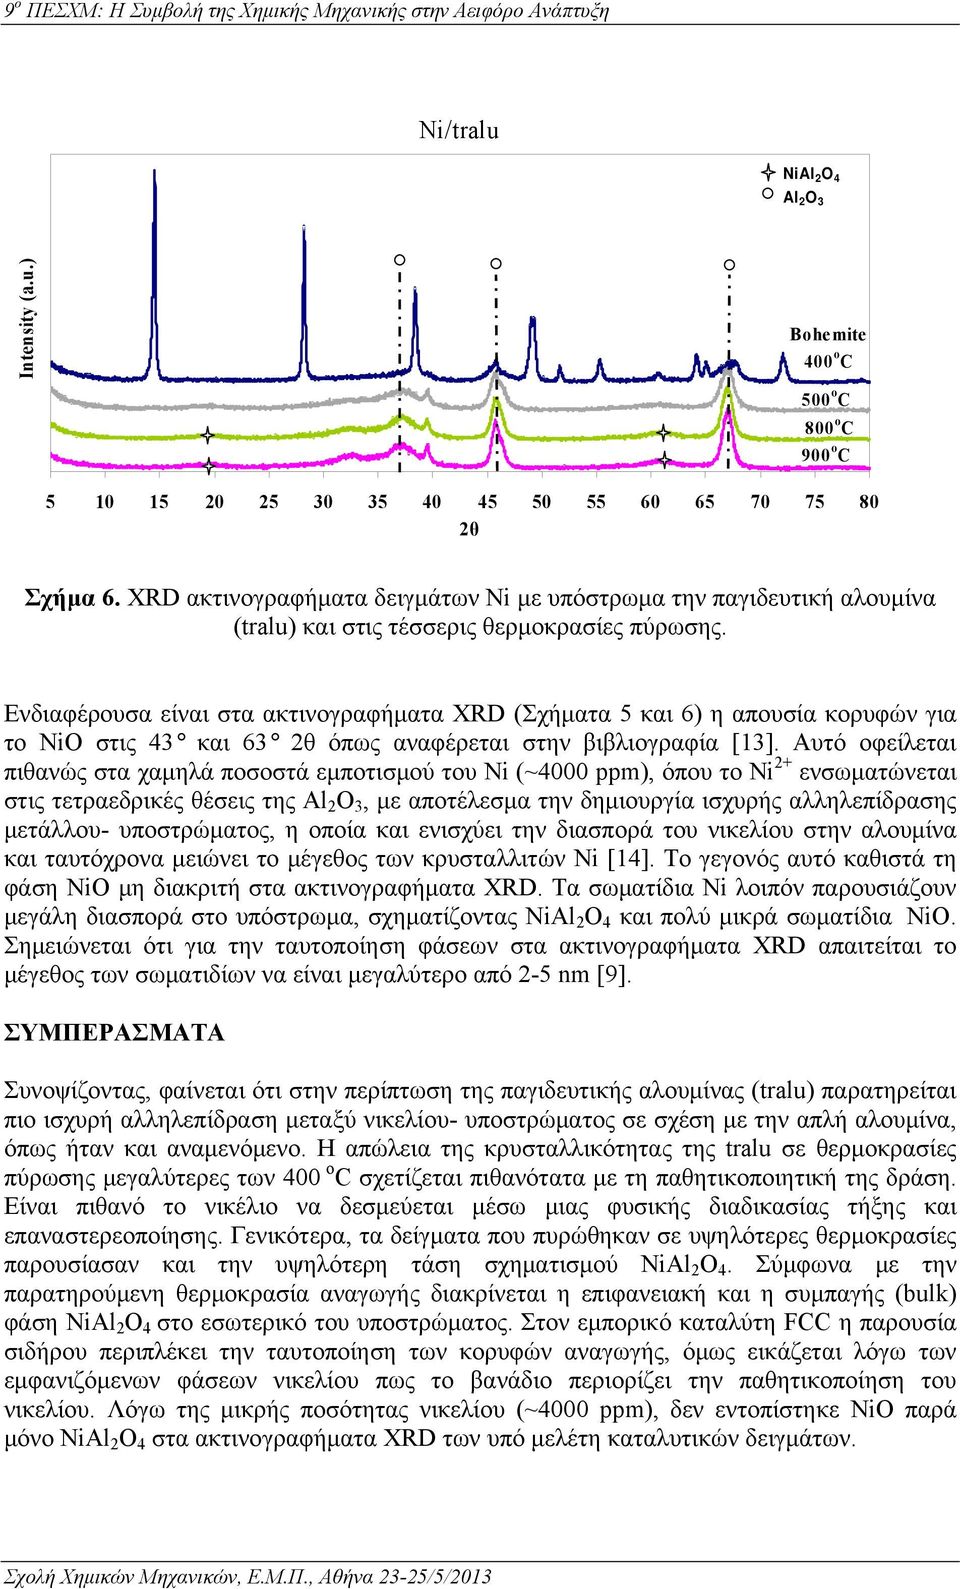 Ενδιαφέρουσα είναι στα ακτινογραφήματα XRD (Σχήματα 5 και 6) η απουσία κορυφών για το NiO στις 43 και 63 2θ όπως αναφέρεται στην βιβλιογραφία [13].